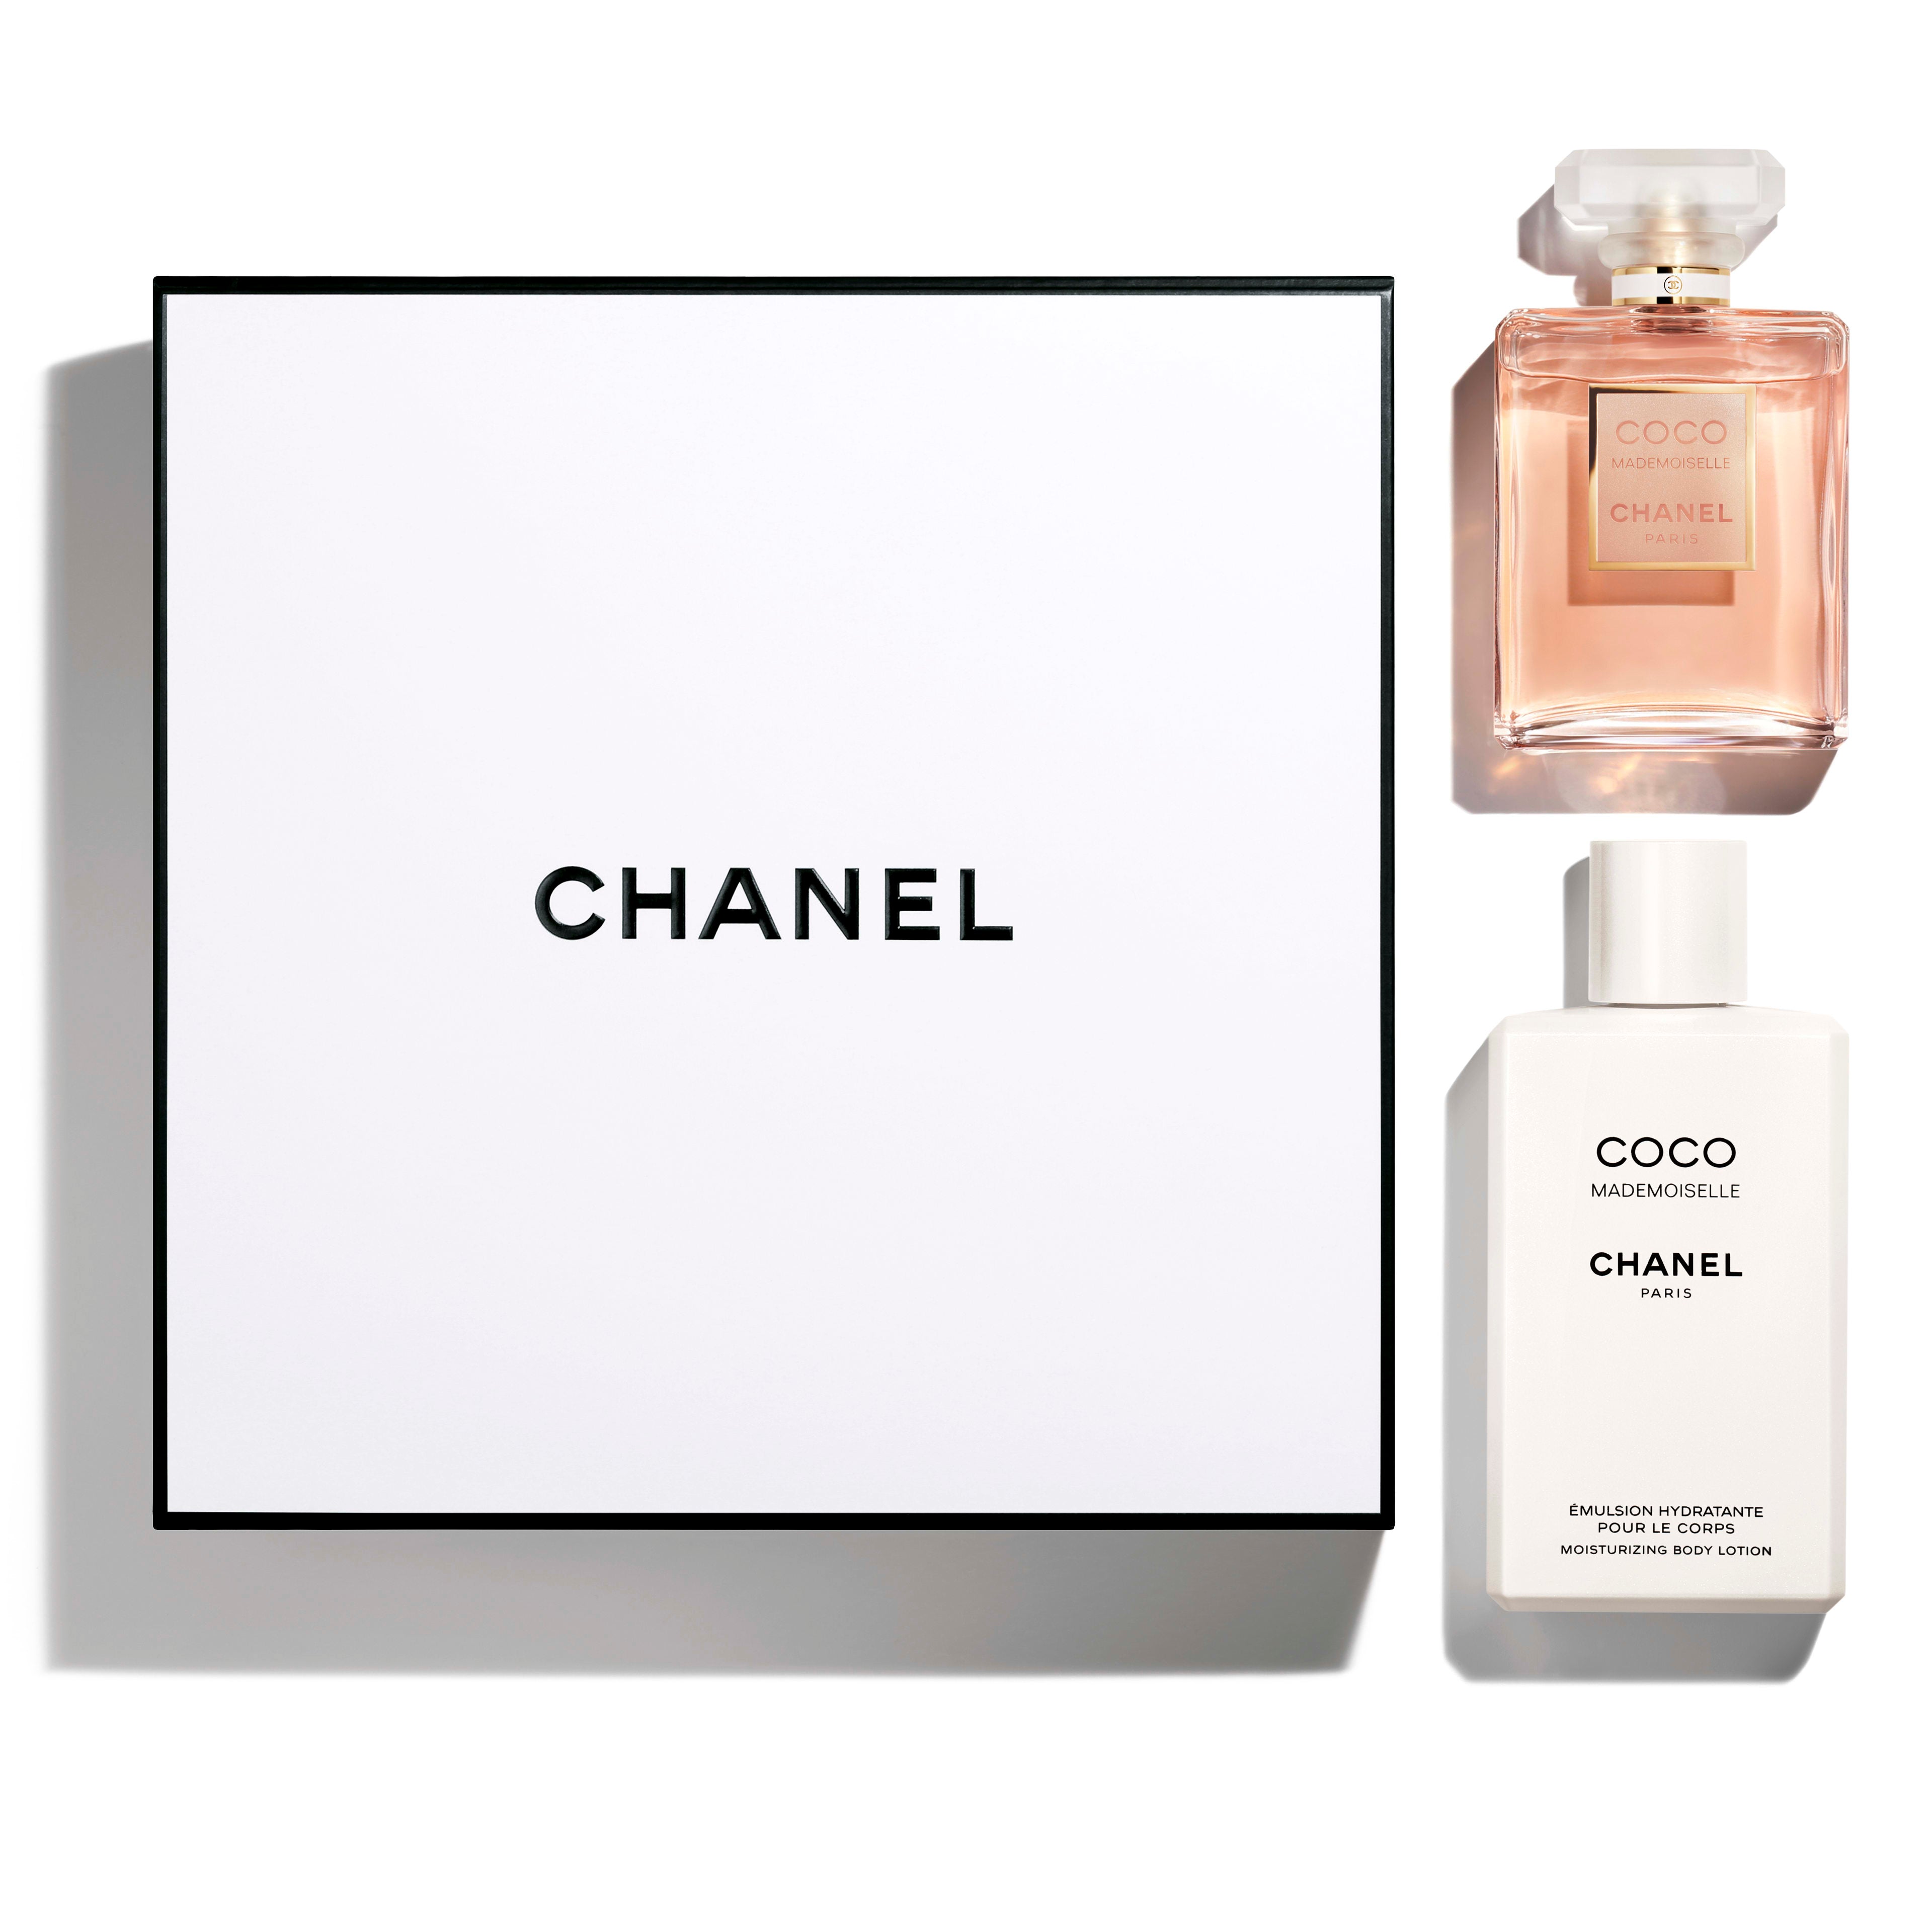 Coco Mademoiselle Chanel Paris Gift set 2 pcs Eau de Parfum 6.8oz, for –  always special perfumes & gifts